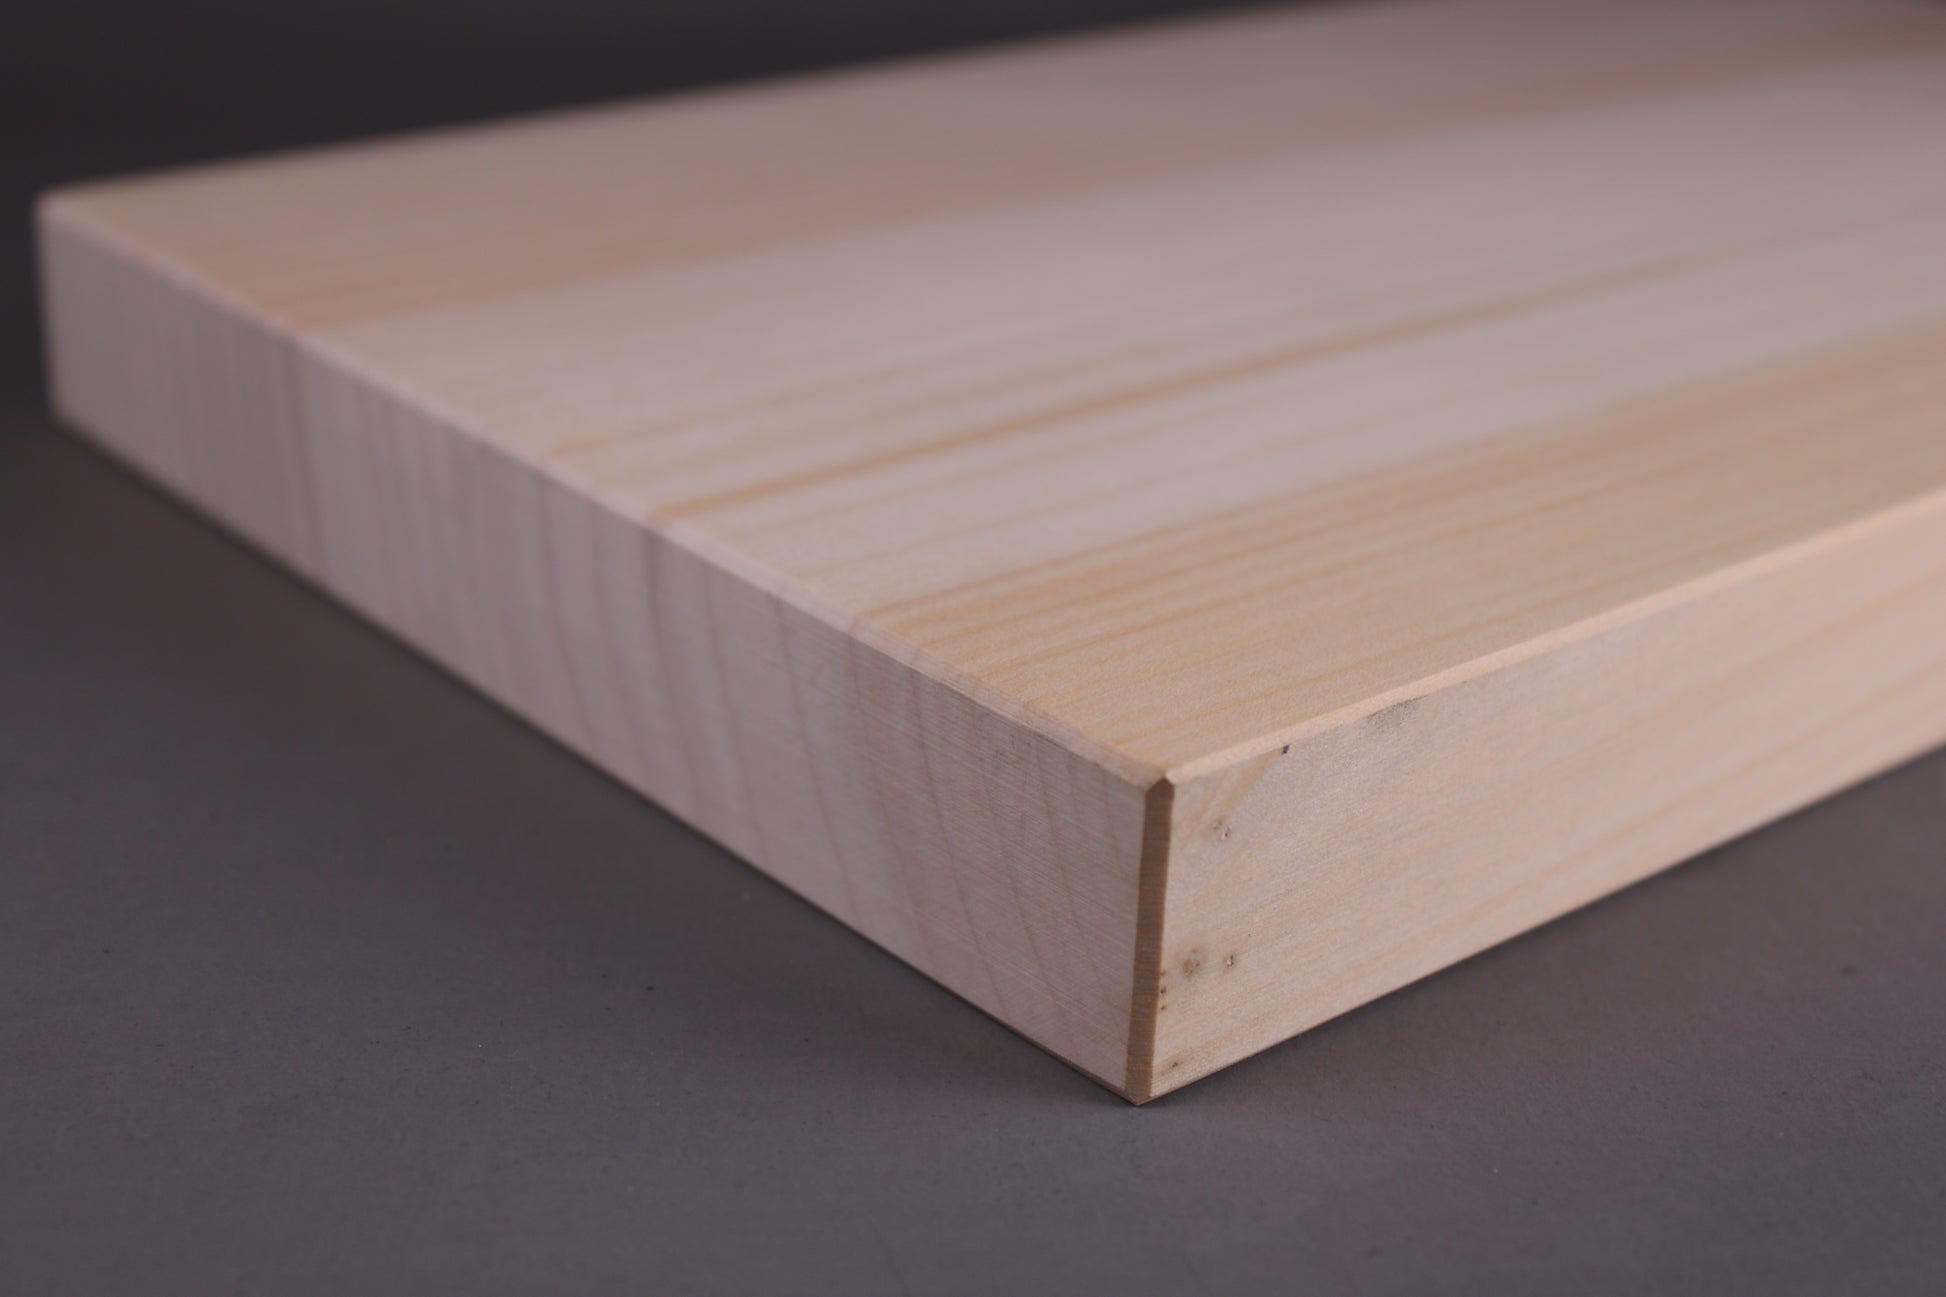 detail gingko tree rings on smooth cutting board detail gingko wood cutting board size s 